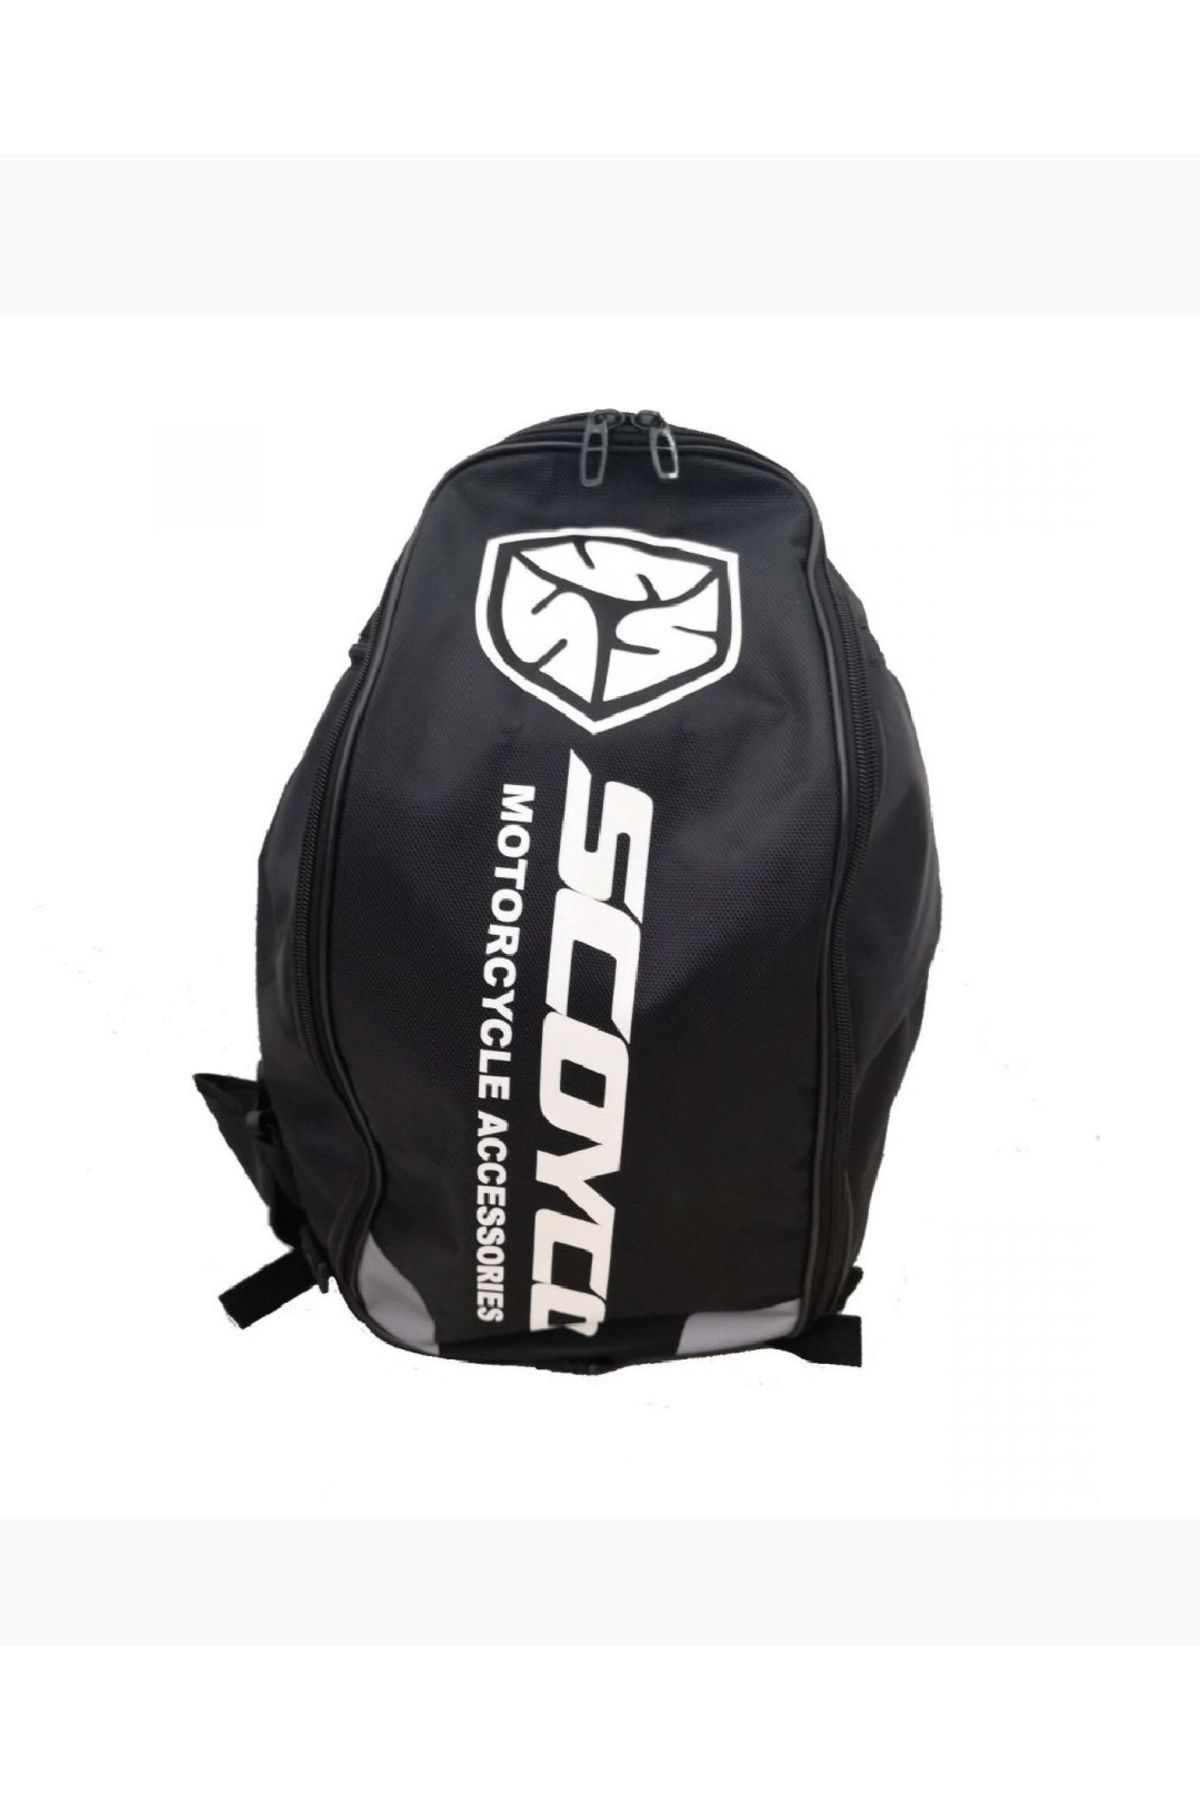 Scoyco SC0270 sırt çantası körüklü sistem 40 lt taşıma kapasitesi